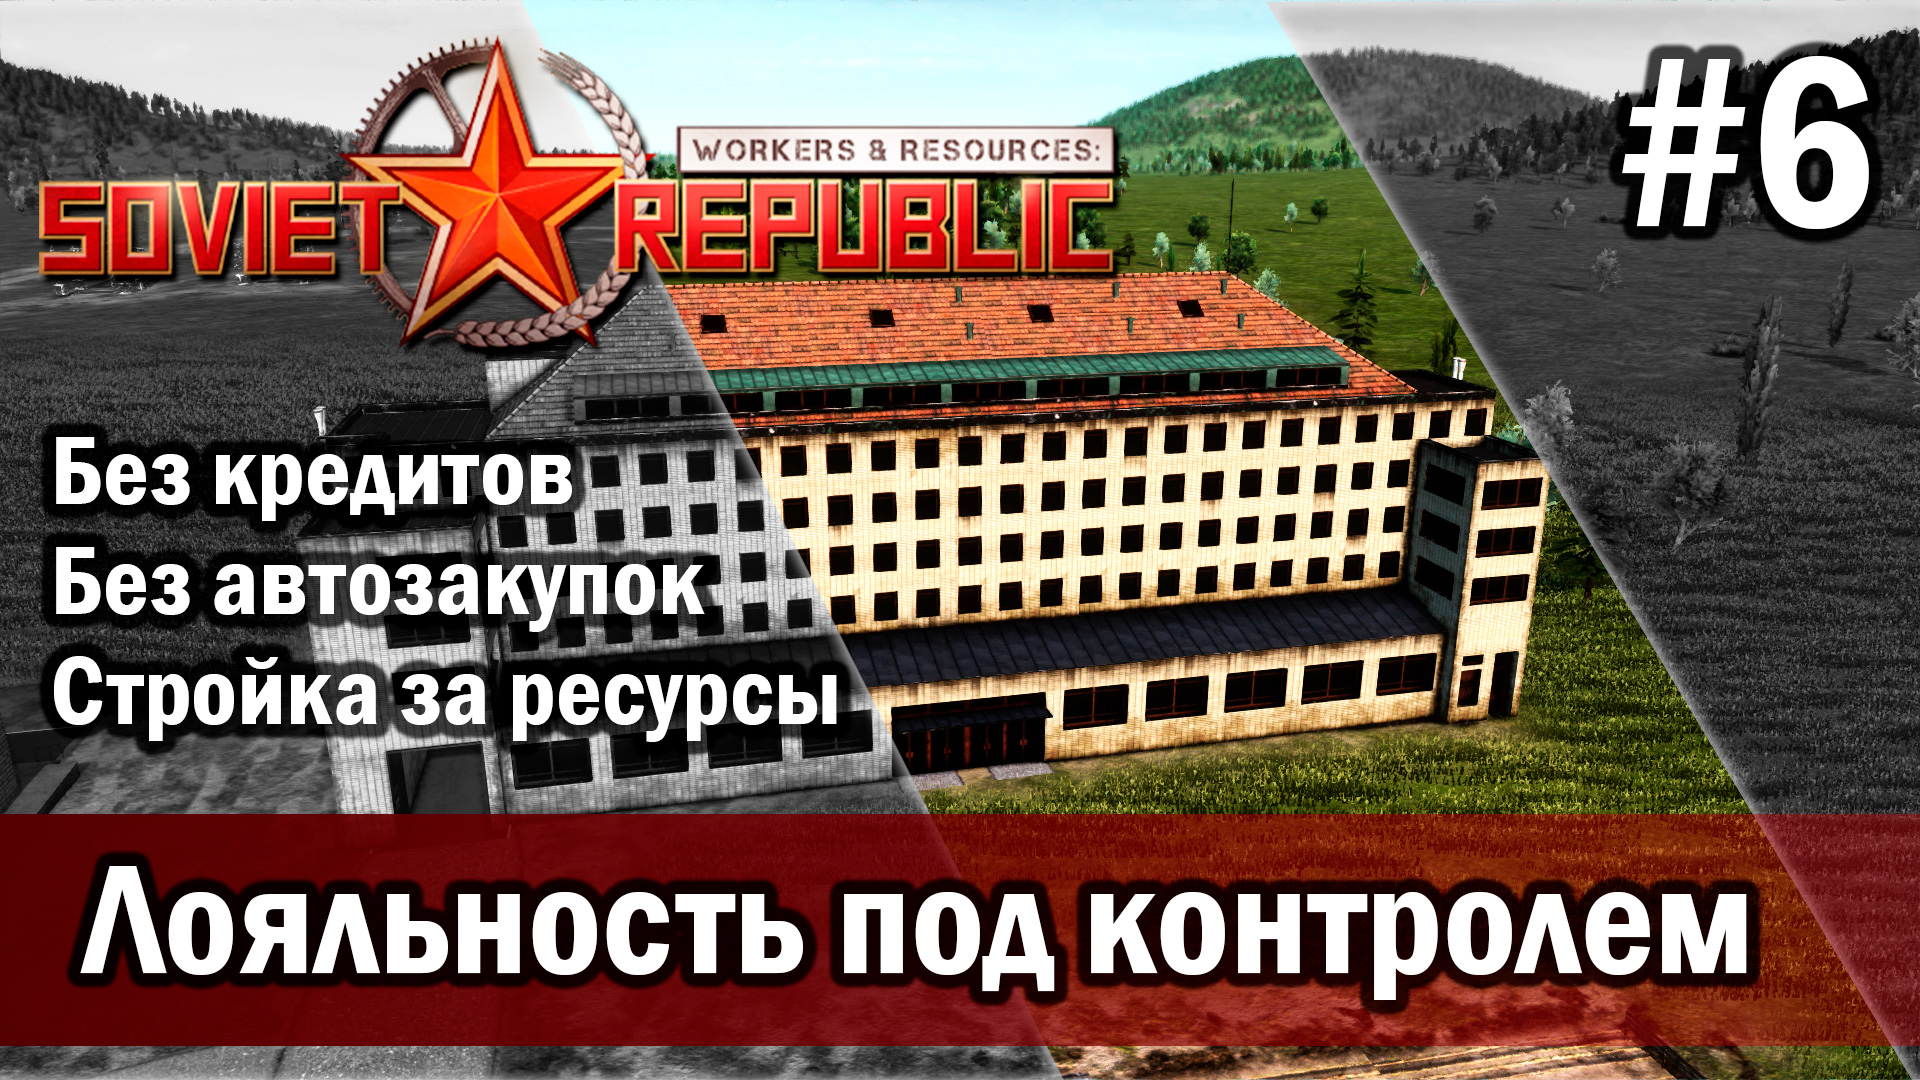 Workers & Resources Soviet Republic на тяжелом 3 сезон 6 серия